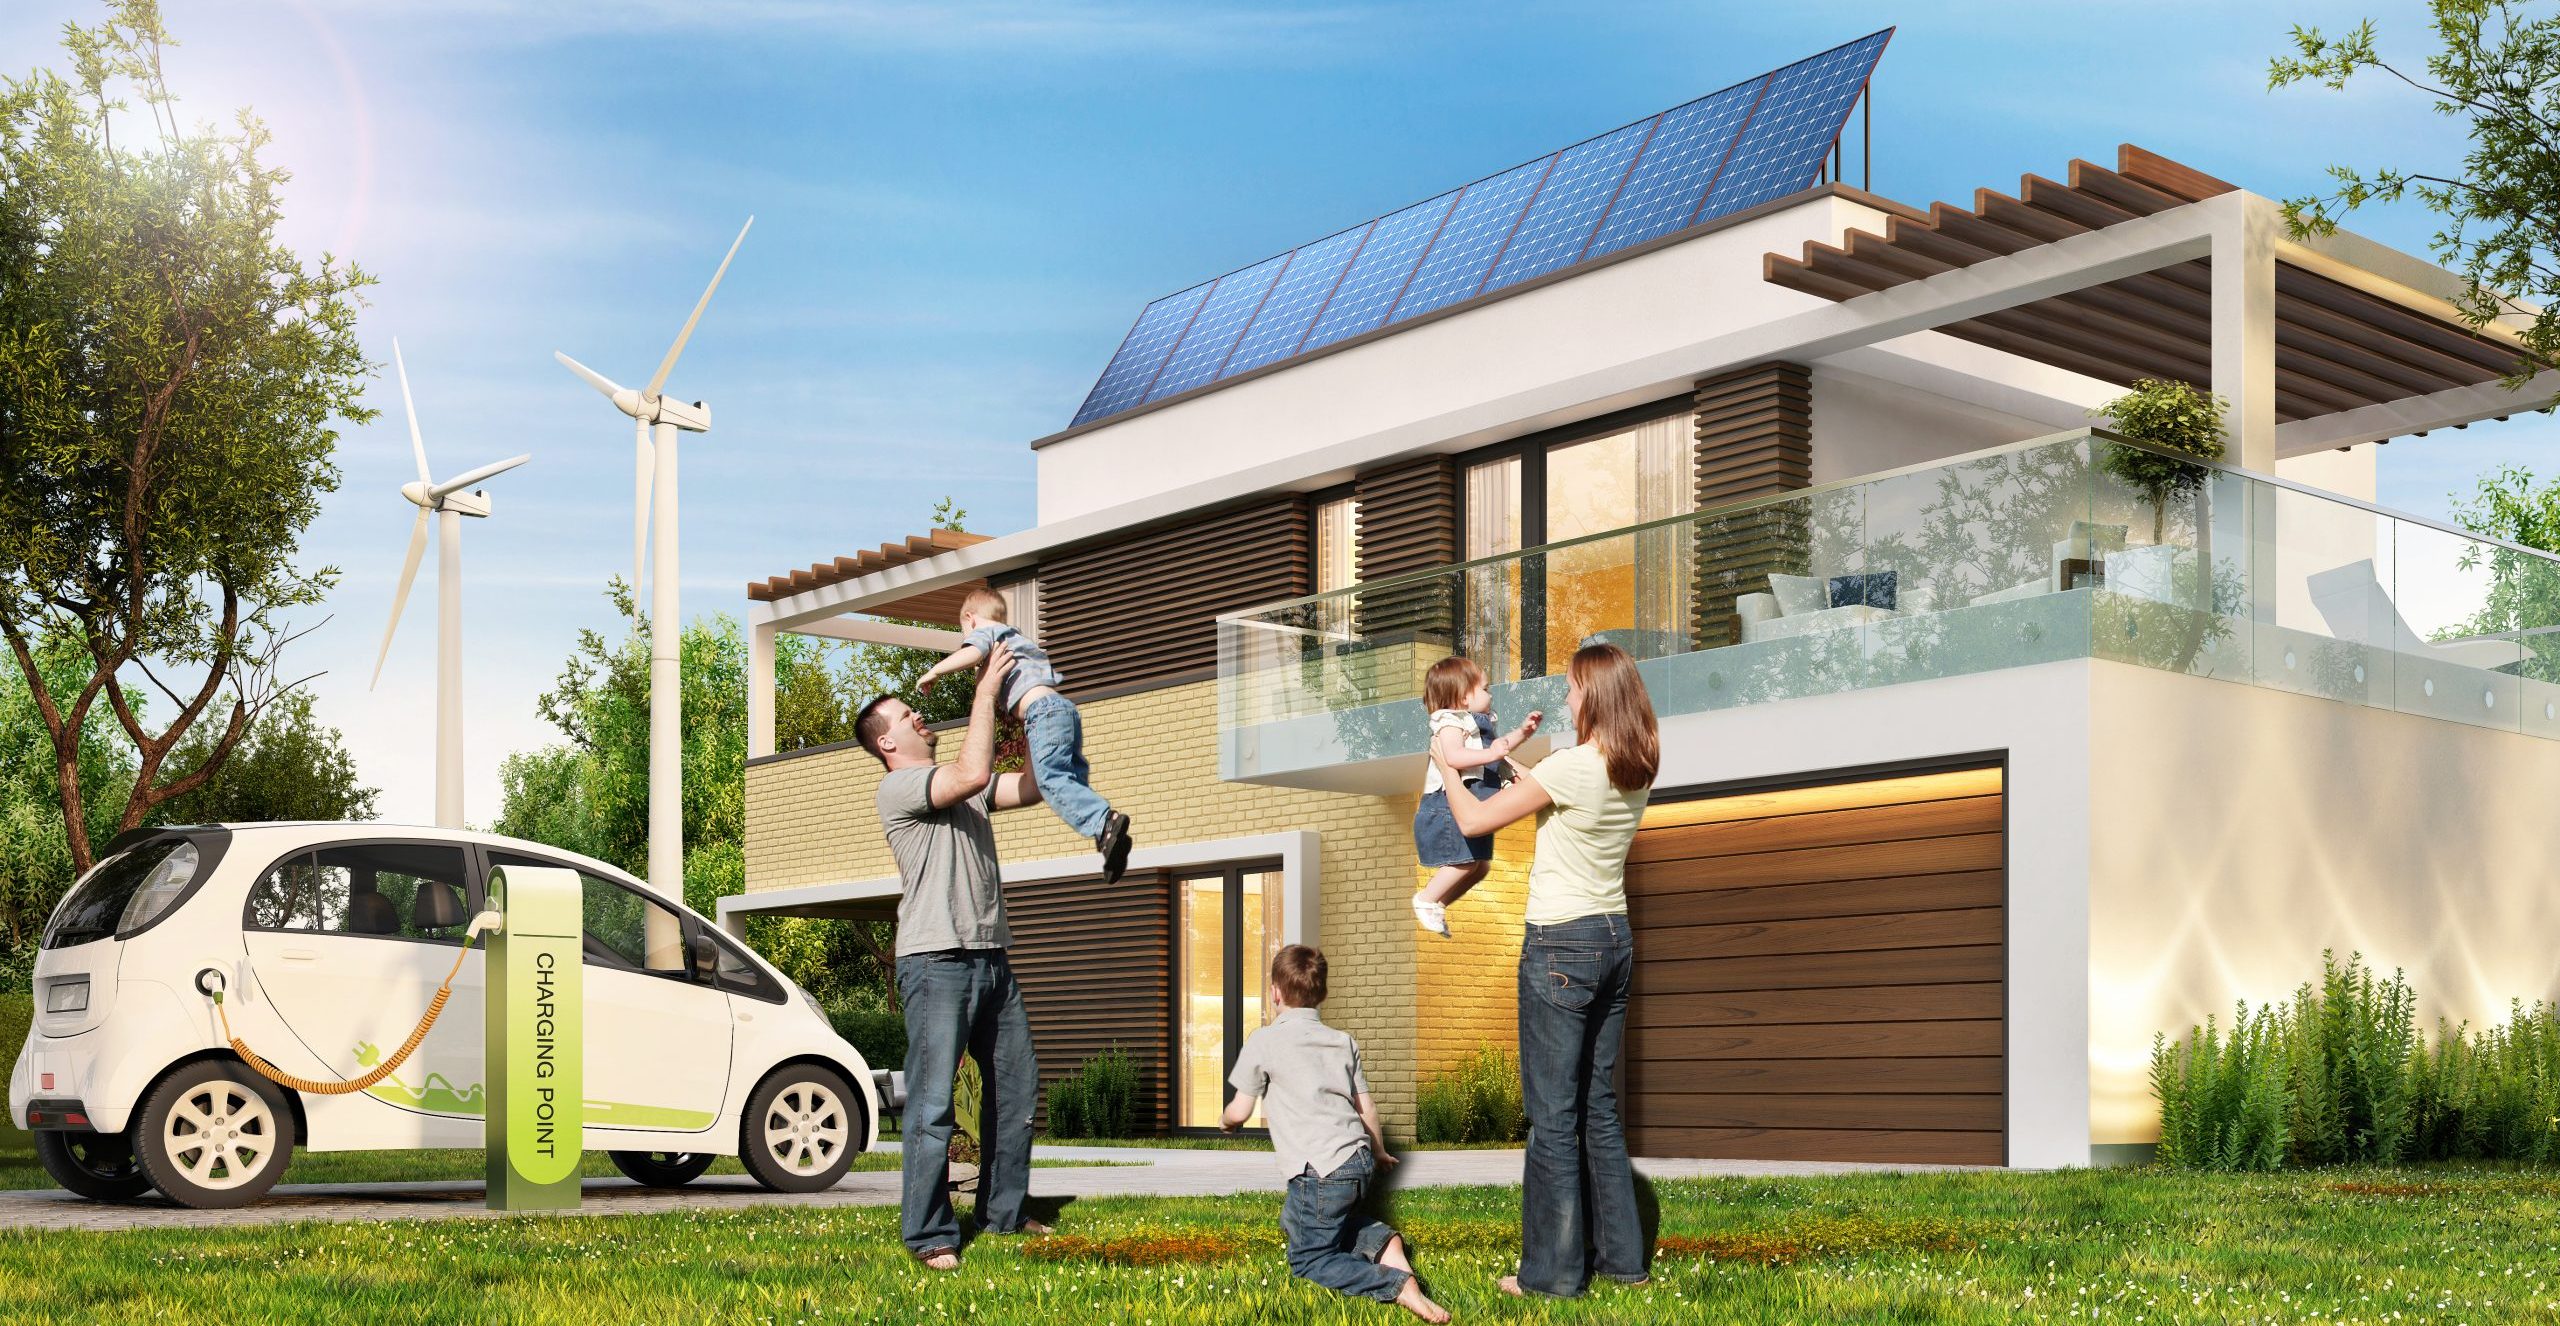 Eltern mit Kindern vor einem Haus mit PV-Anlage am Dach, Windrädern im Hintergrund und einem ladenden E-Auto.